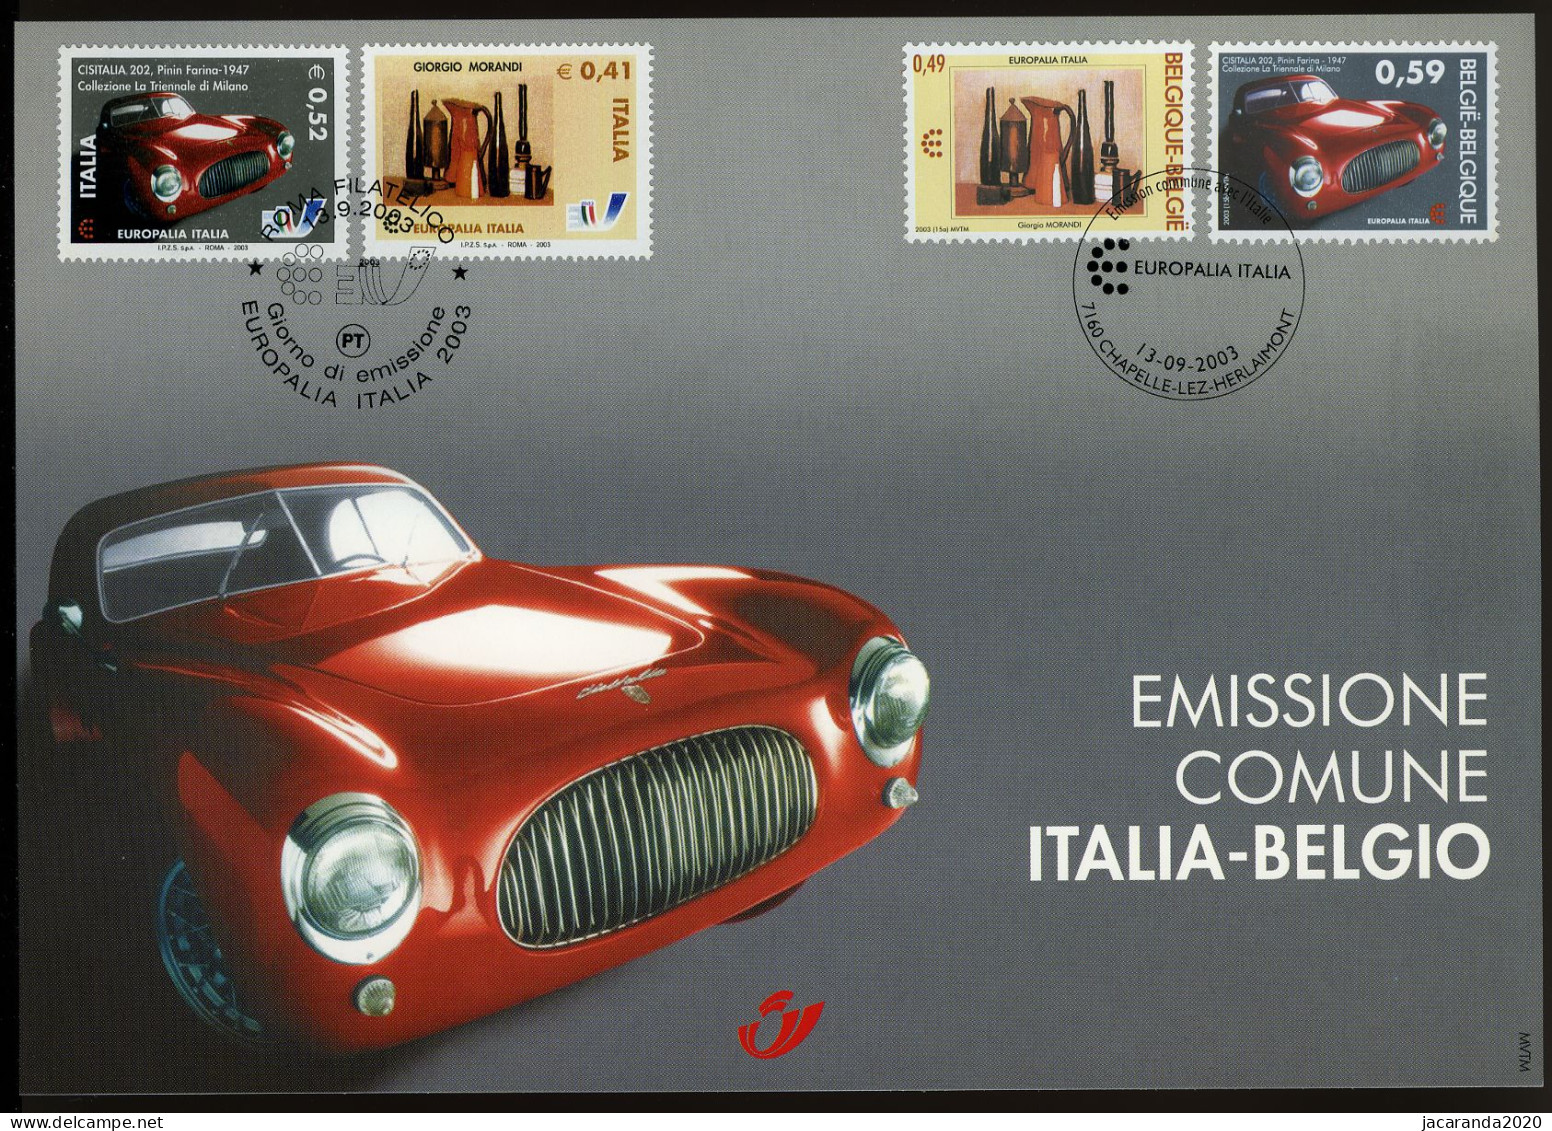 België 3205 HK - Europalia Italië - Giorgio Morandi - Pinin Farina - Gem. Uitgifte Met Italië - 2003 - Herdenkingskaarten - Gezamelijke Uitgaven [HK]